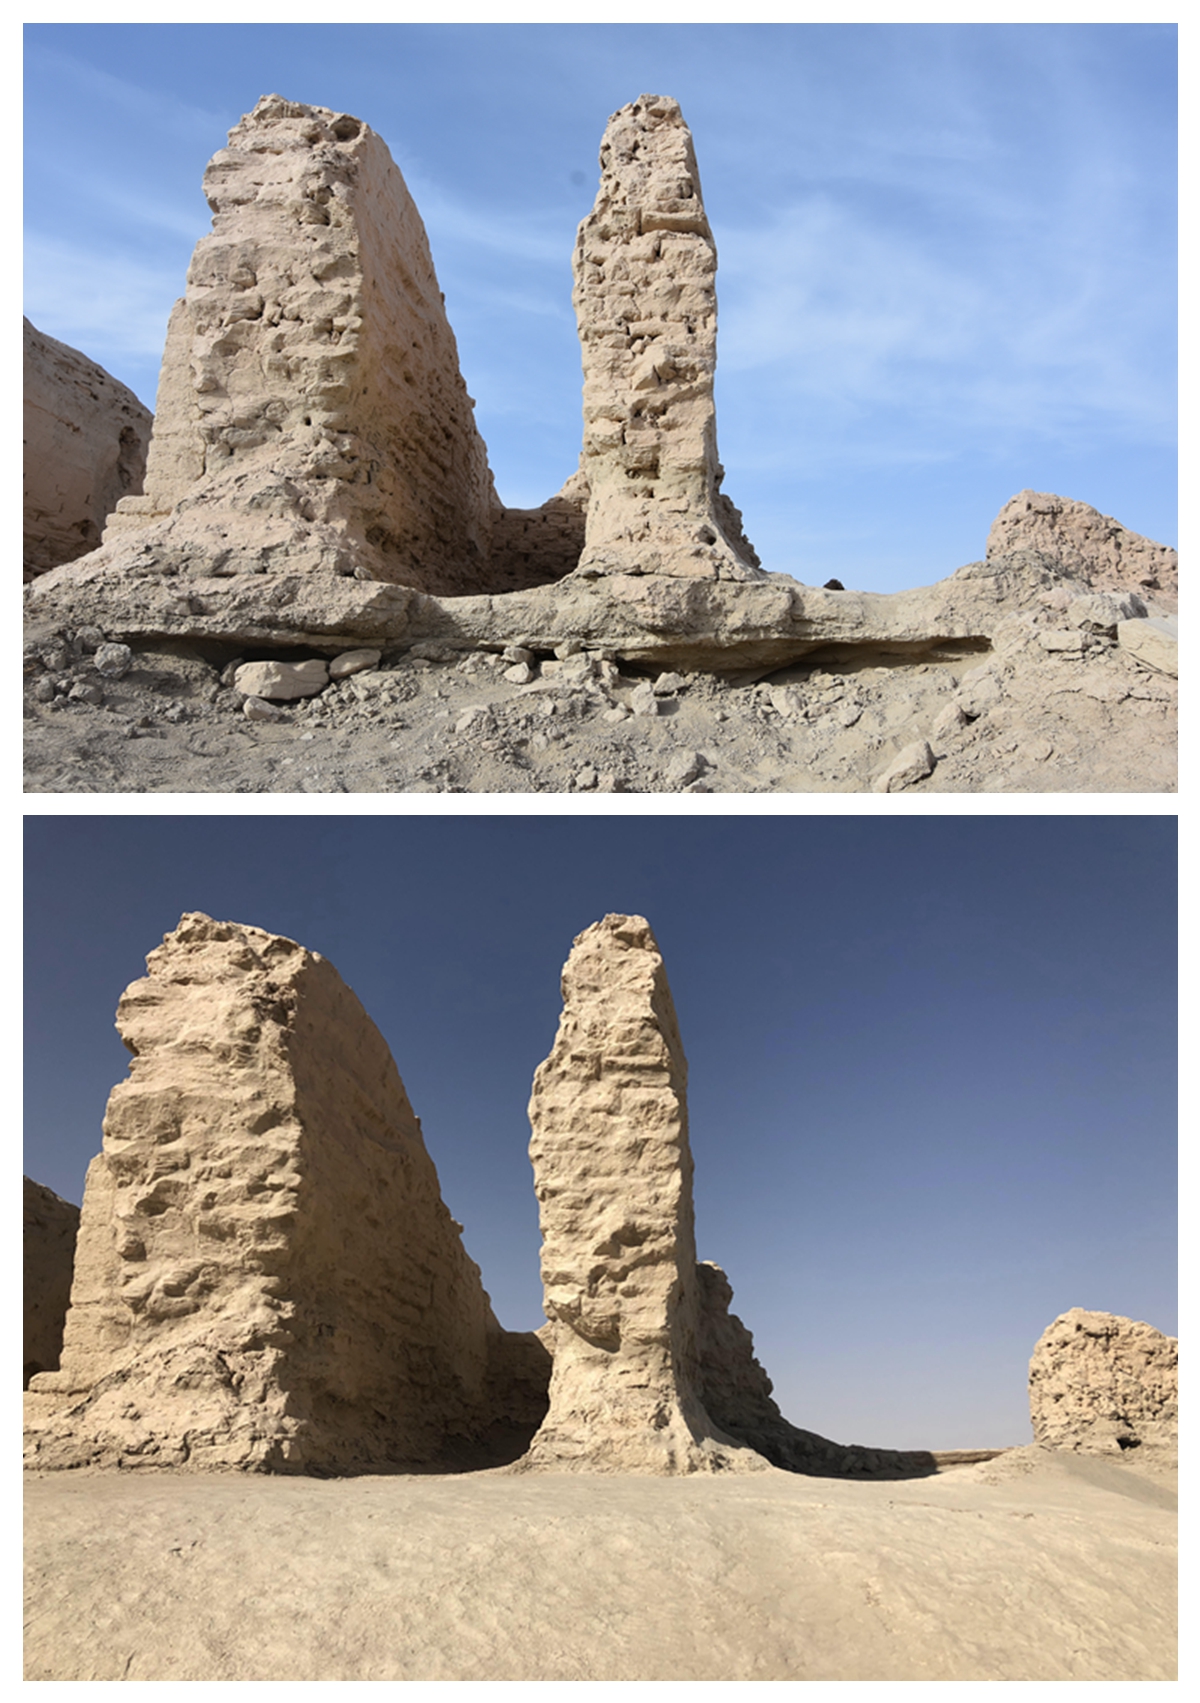 幻の都市「楼蘭」の遺跡で補強工事完了 新疆ウイグル自治区 写真8枚